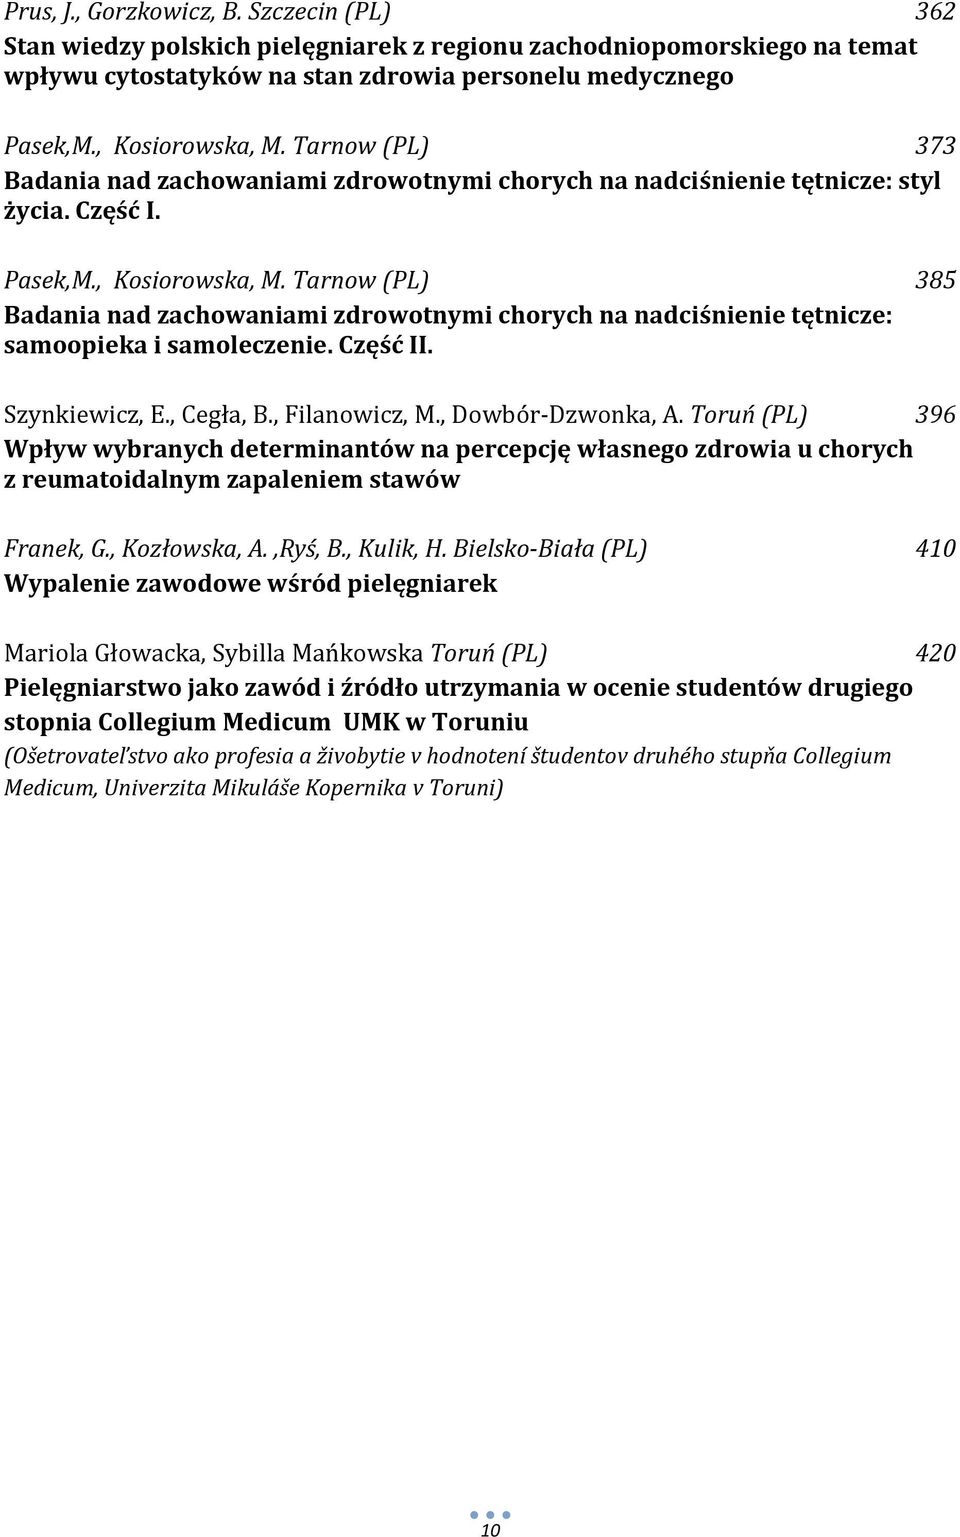 Tarnow (PL) 385 Badania nad zachowaniami zdrowotnymi chorych na nadciśnienie tętnicze: samoopieka i samoleczenie. Część II. Szynkiewicz, E., Cegła, B., Filanowicz, M., Dowbór-Dzwonka, A.